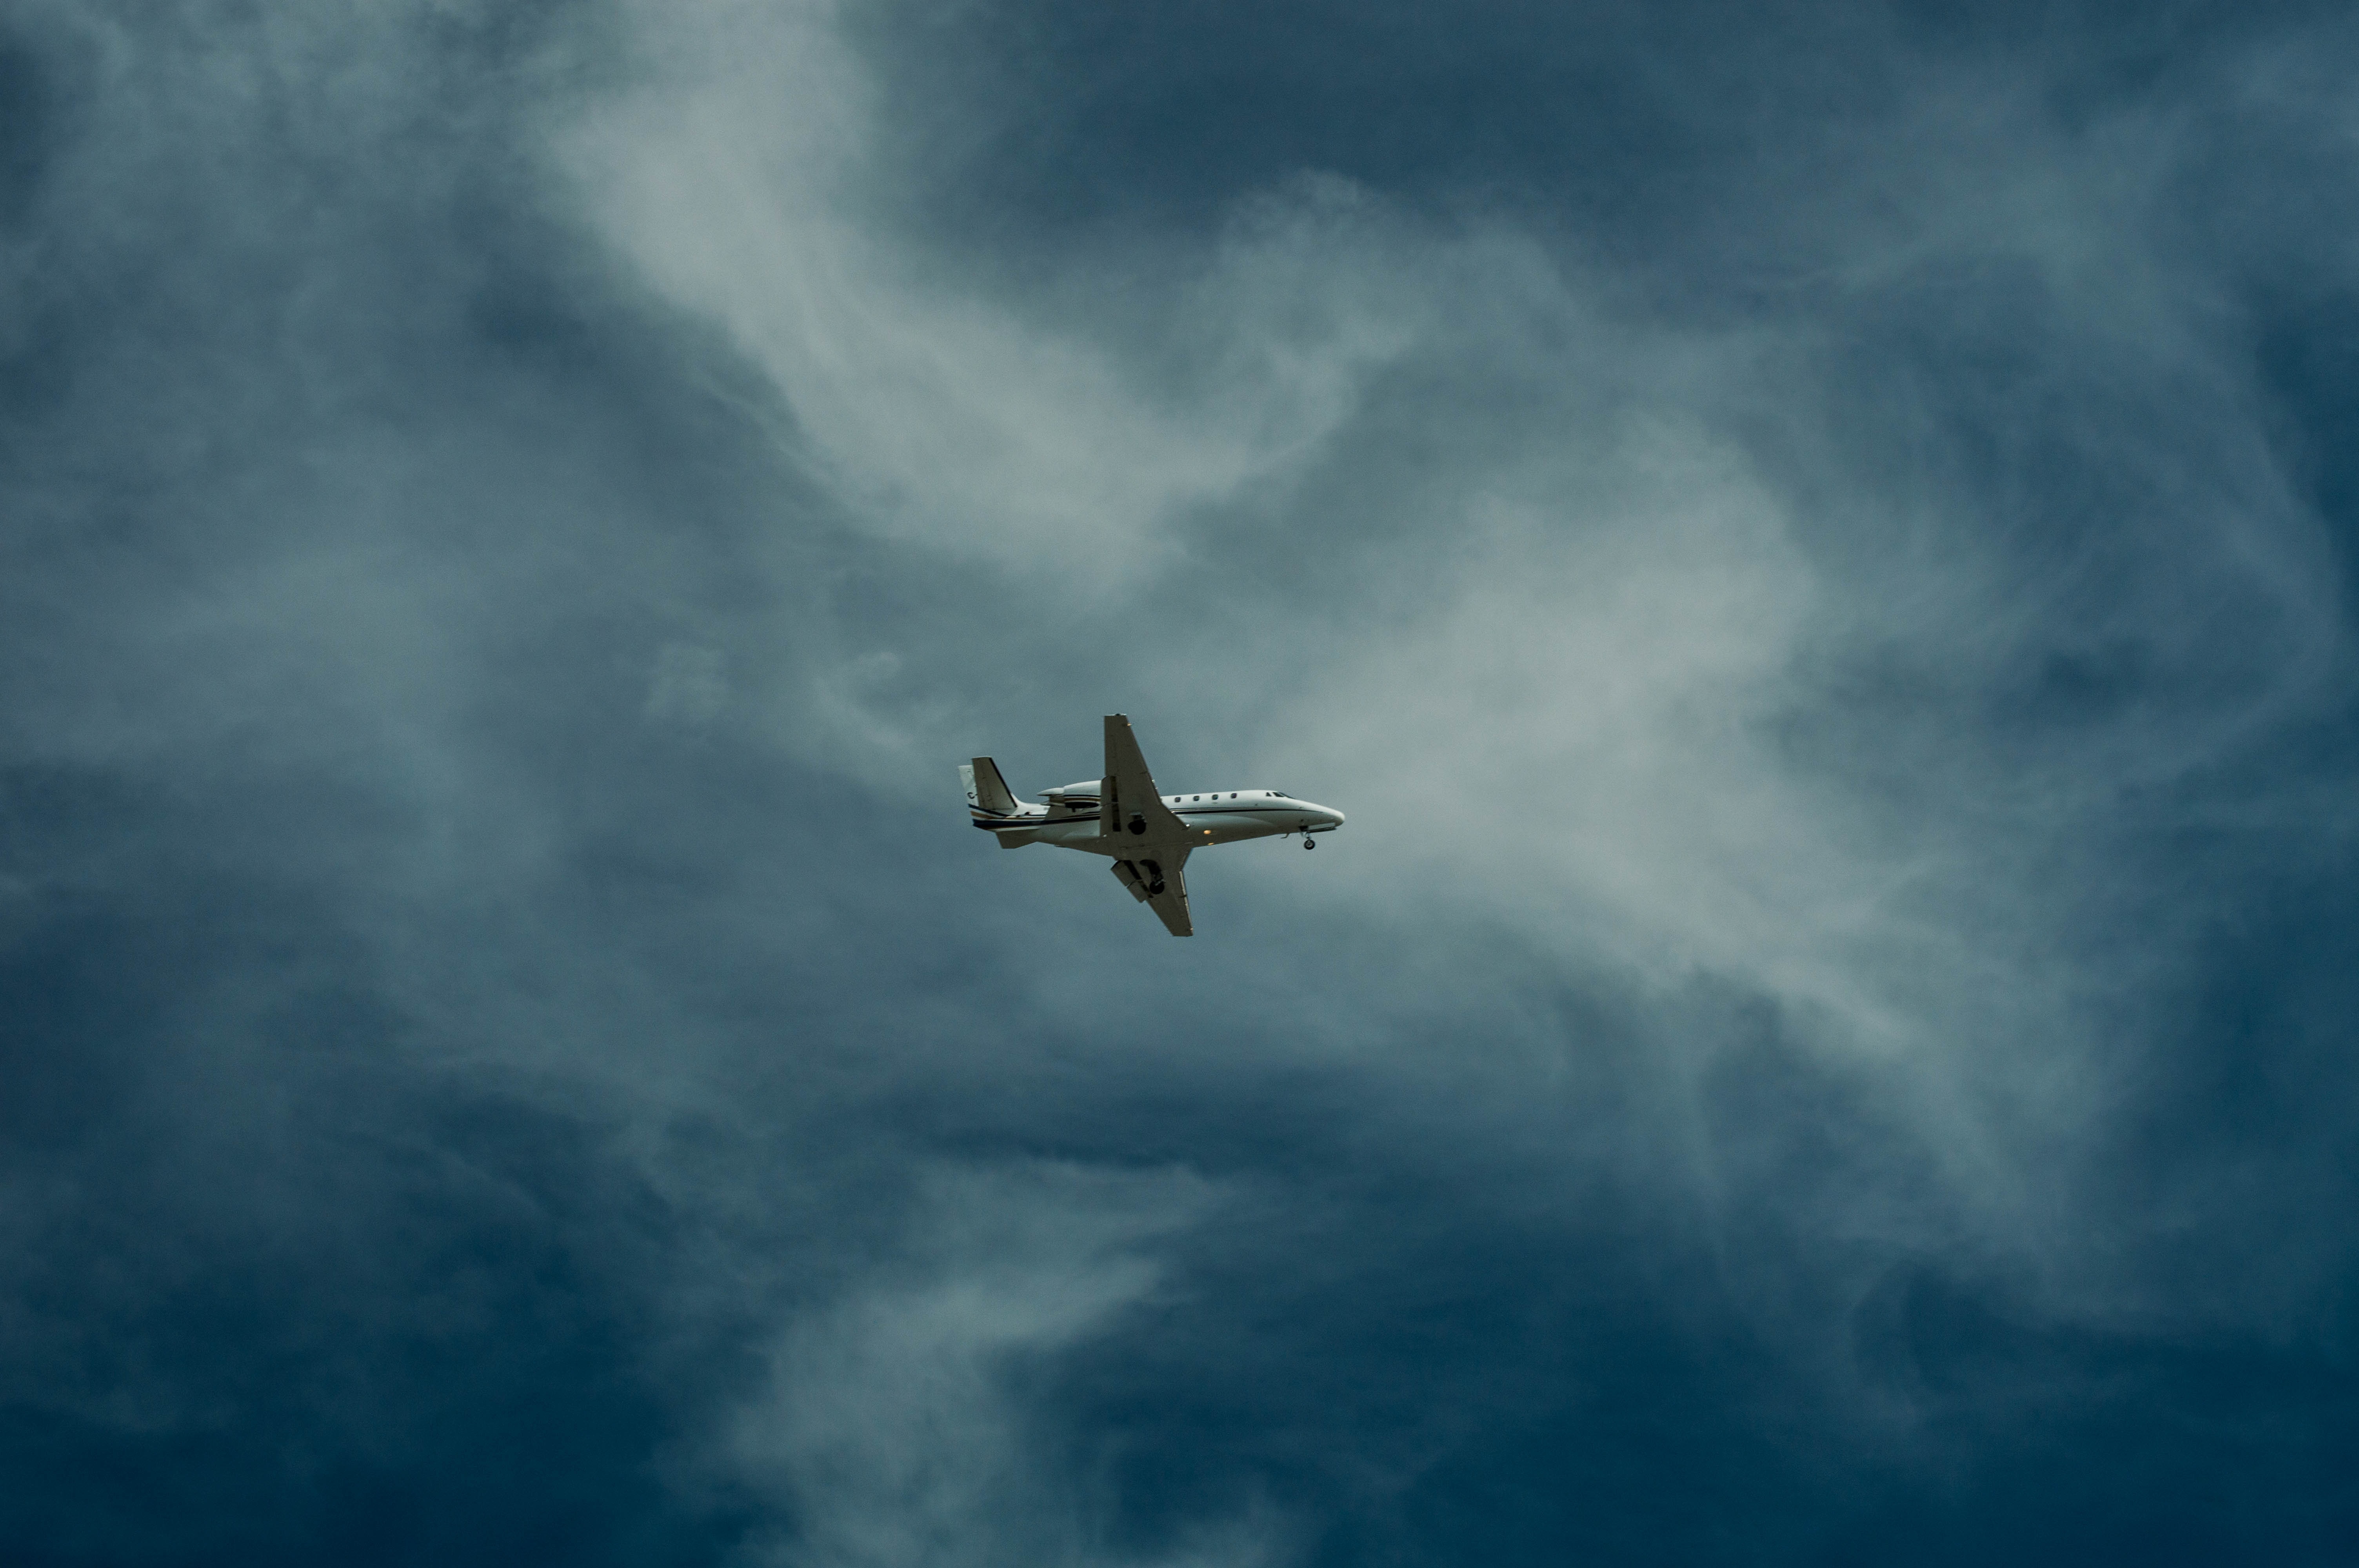 Самолет находящийся в полете преодолевает 205 метров. Самолет в небе. Cfvjktn DF yt,t. Обои самолет. Cfvjk`n d uyt,r.